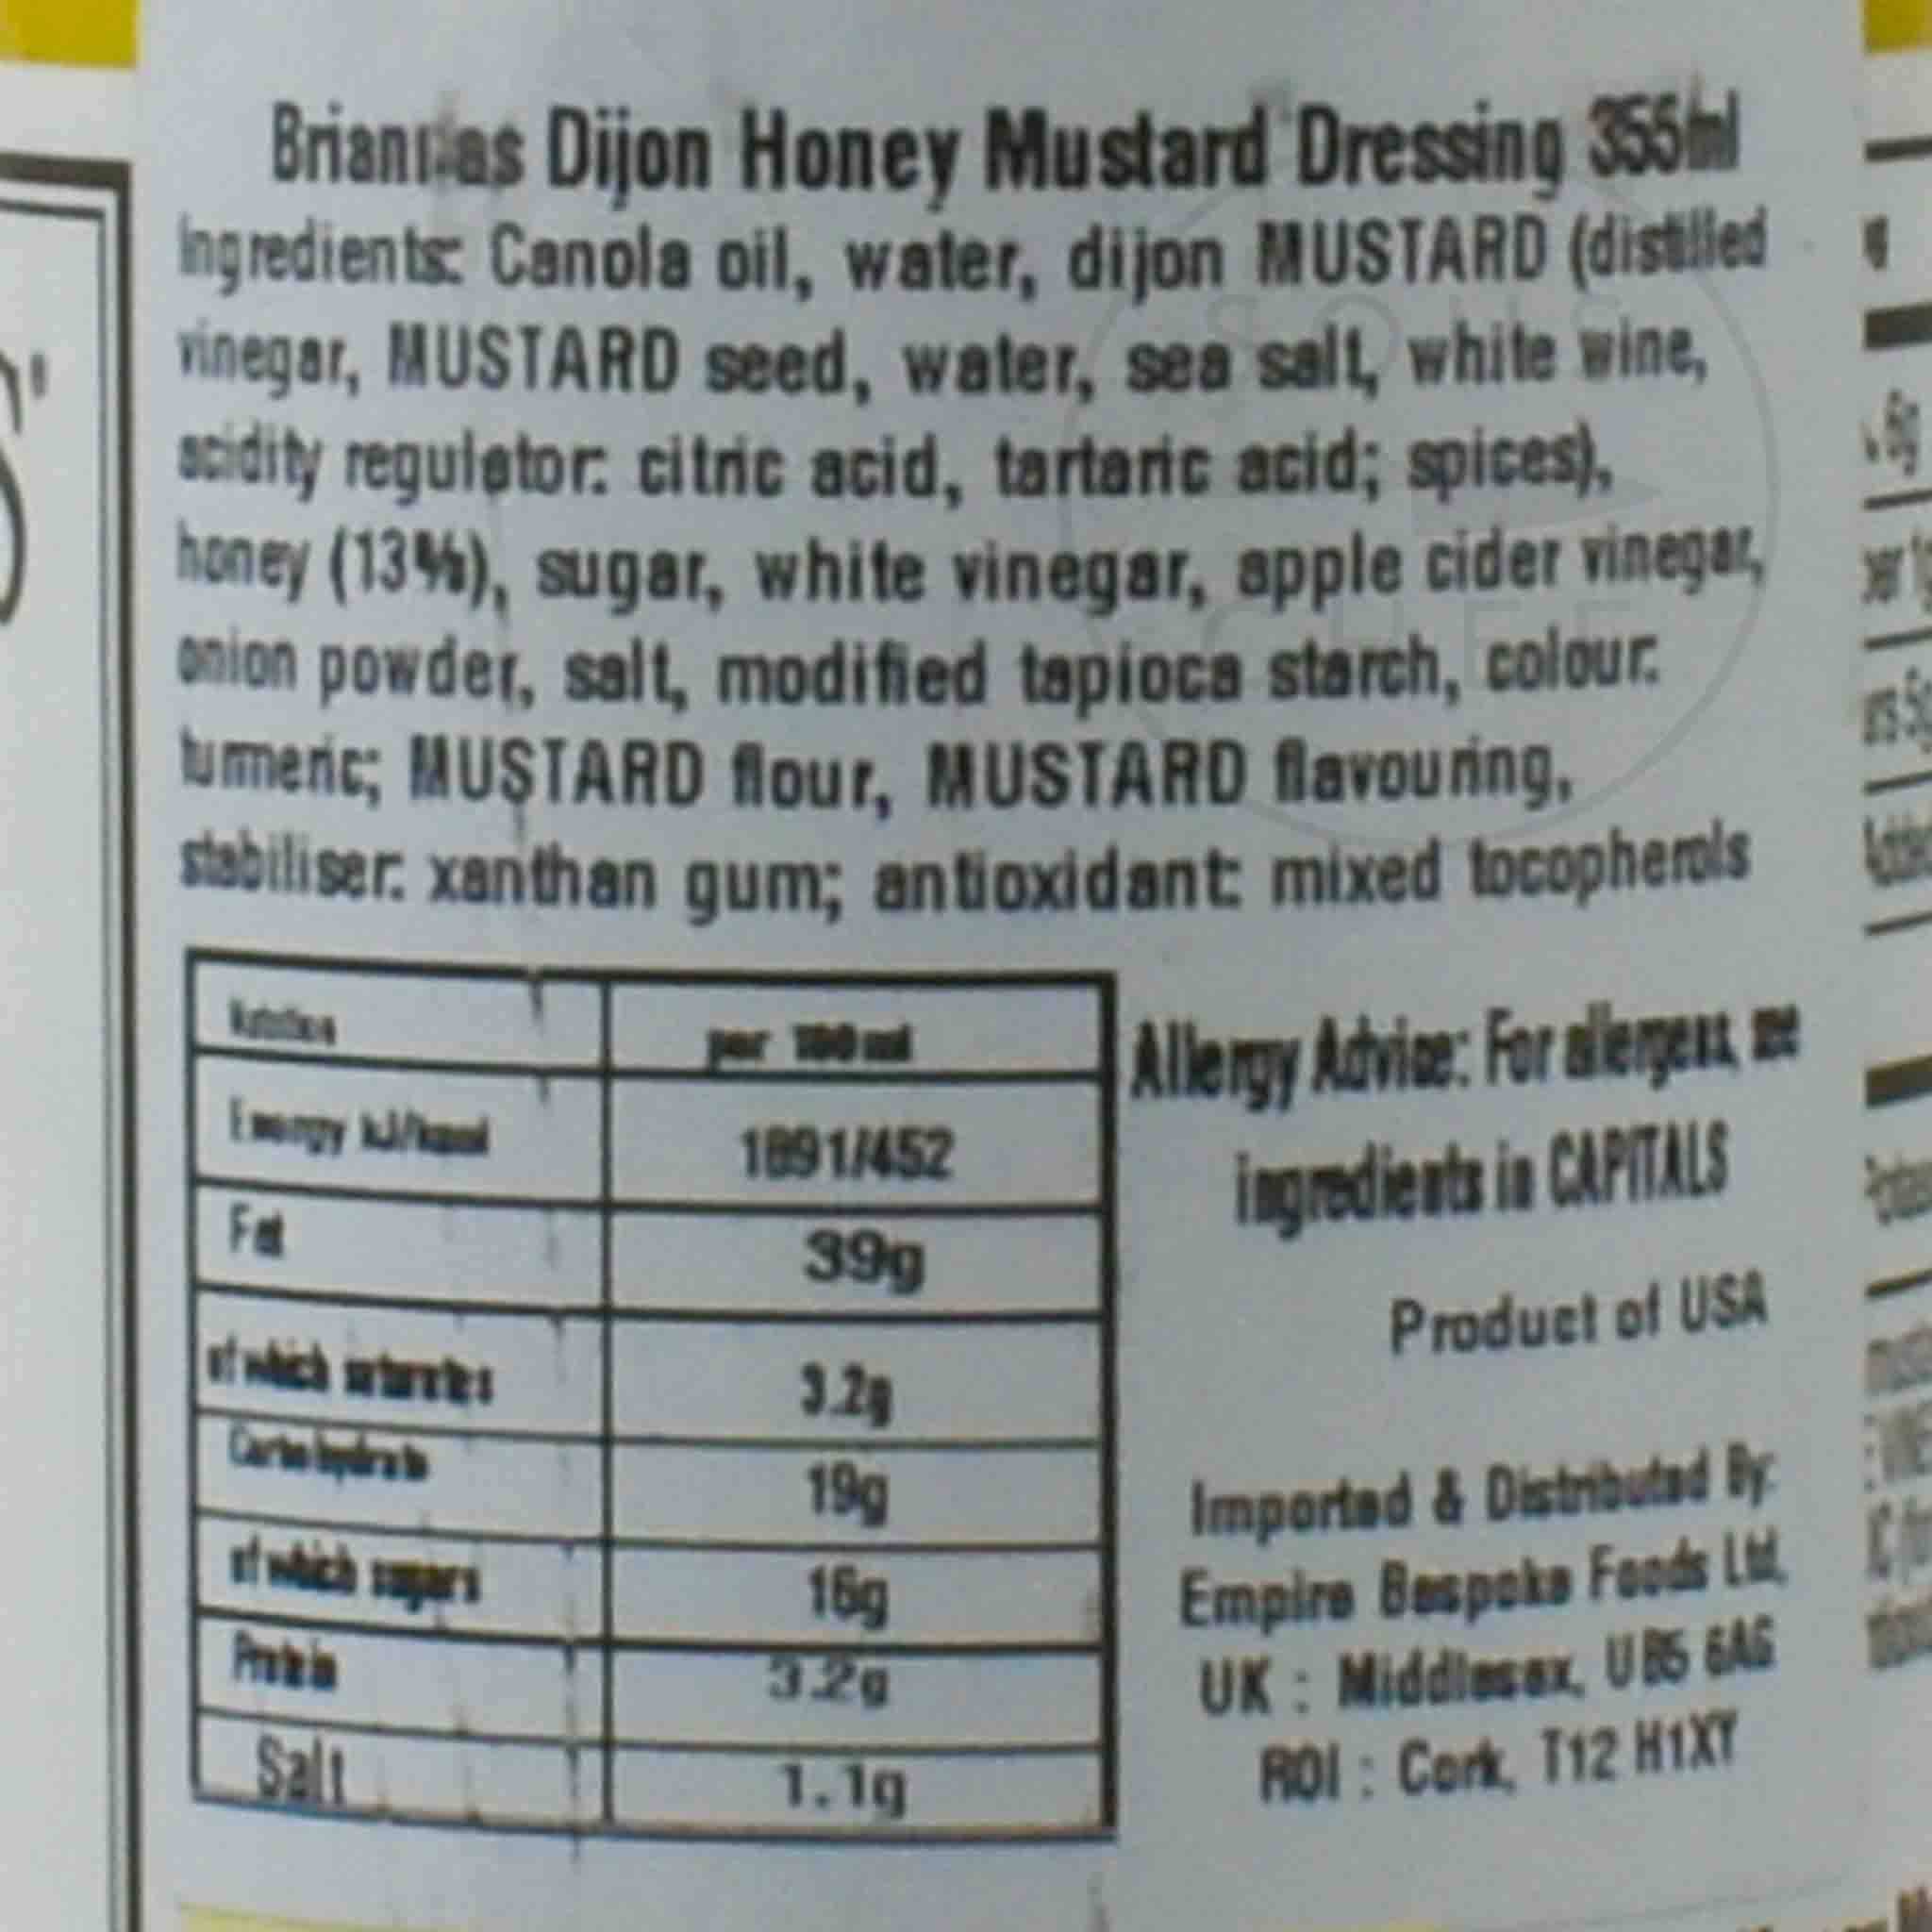 Briannas Dijon Honey Mustard Dressing 355ml